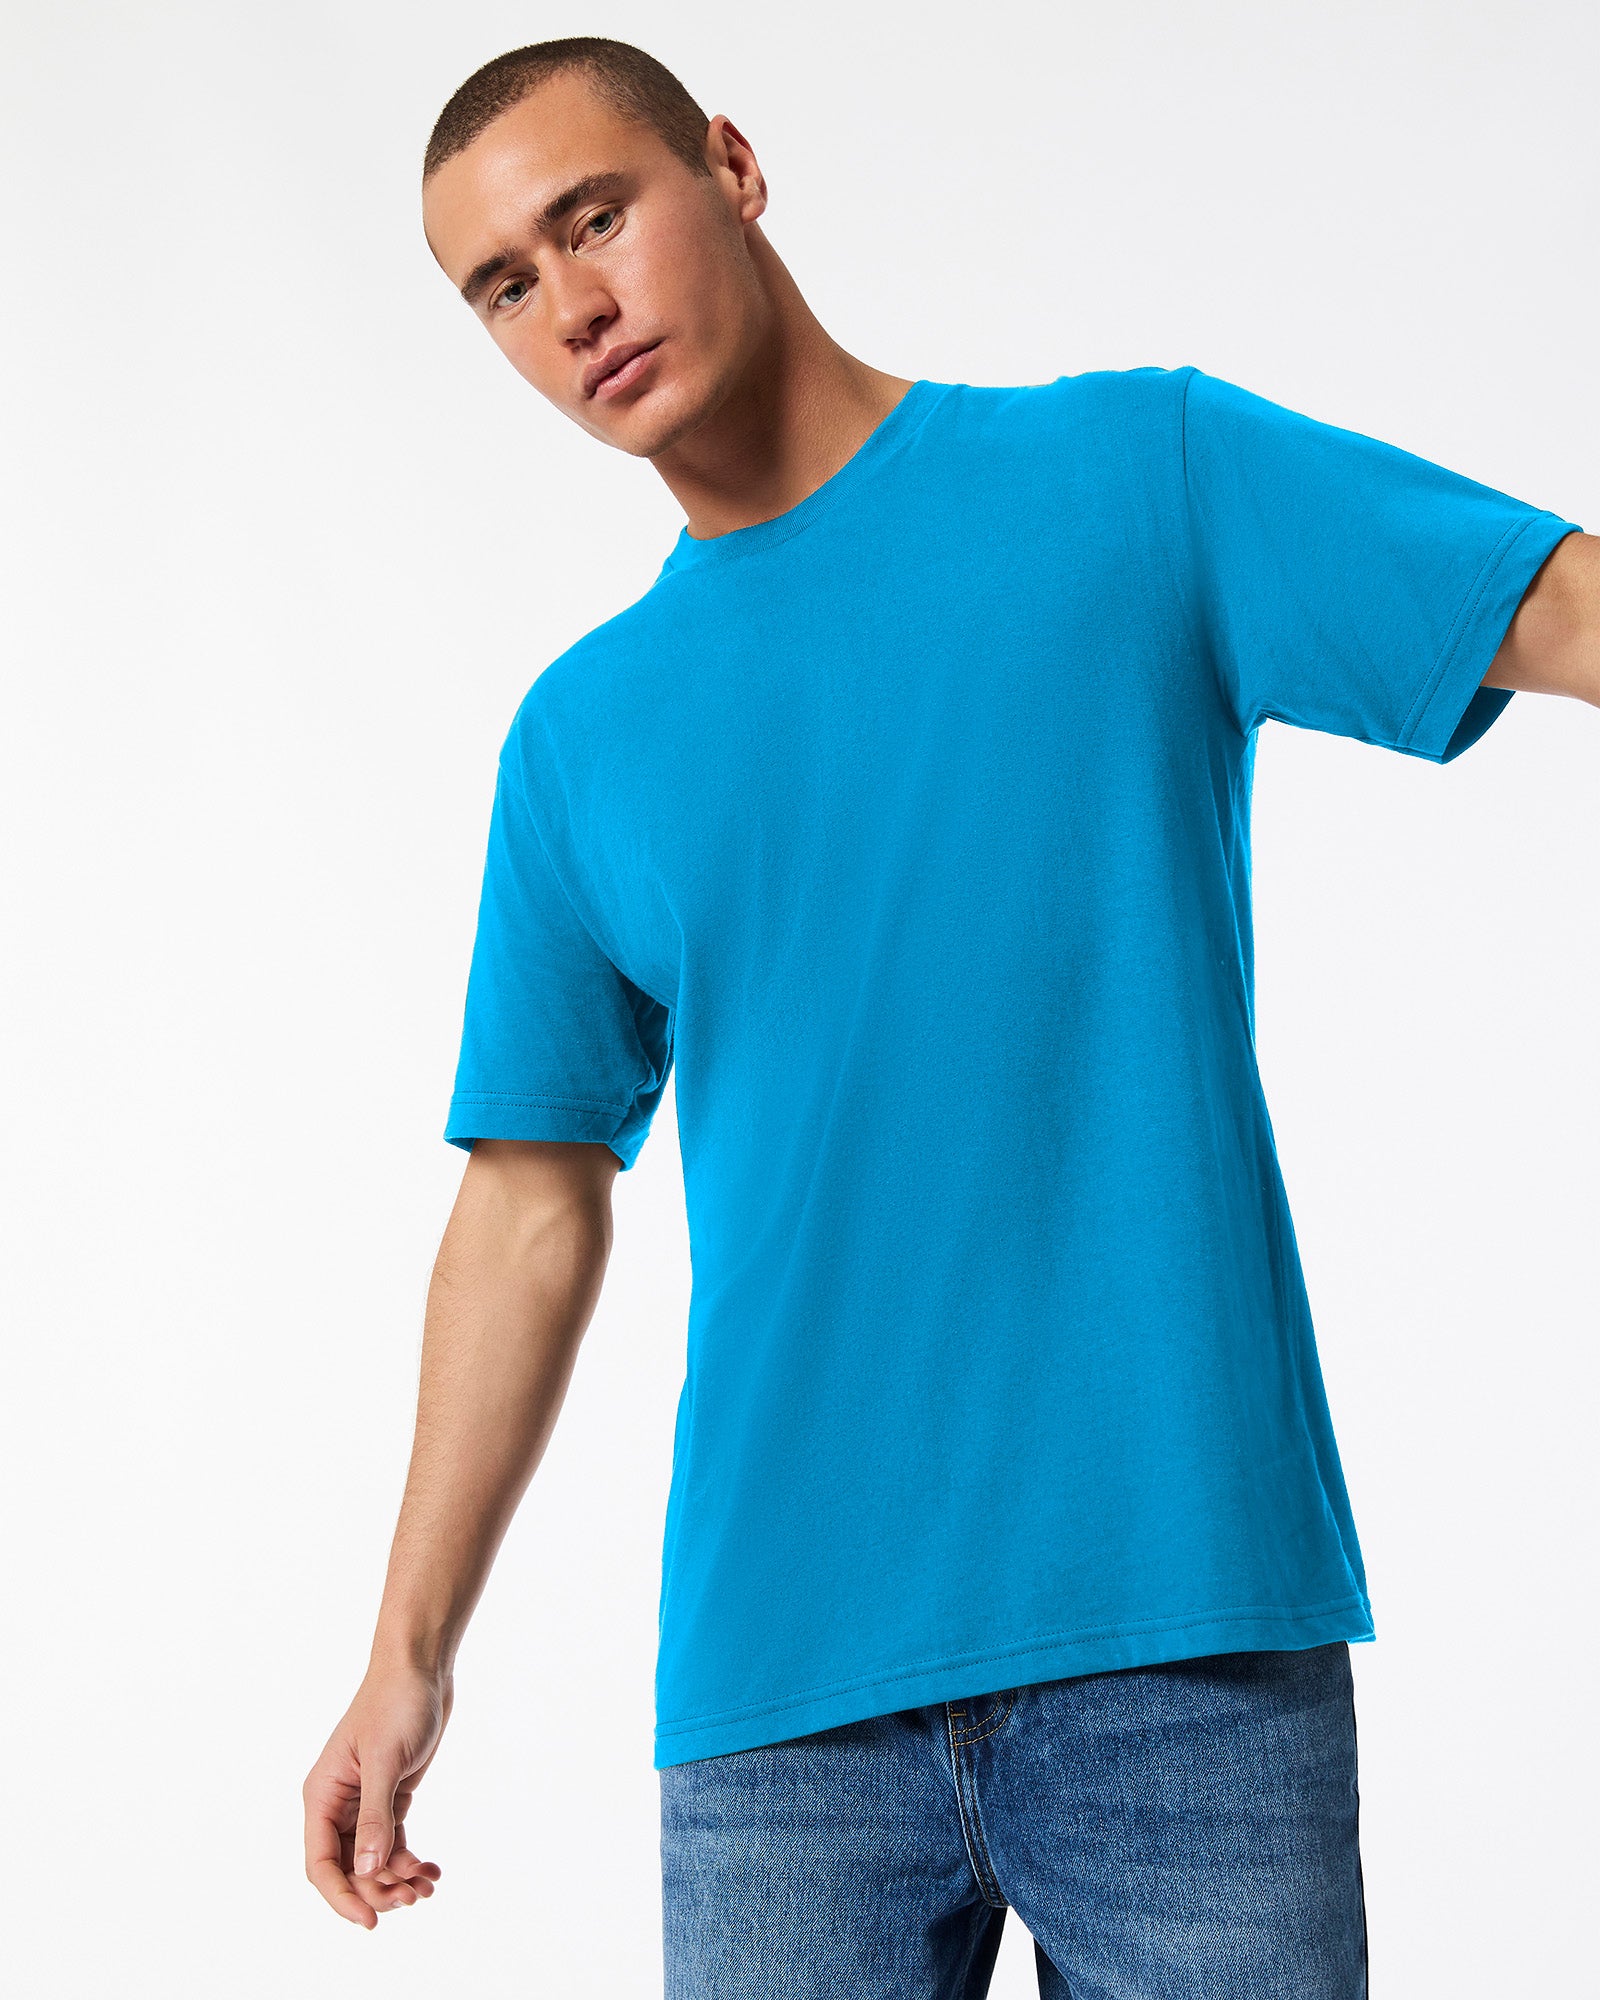 Fine Jersey Unisex Short Sleeve T-Shirt - Teal